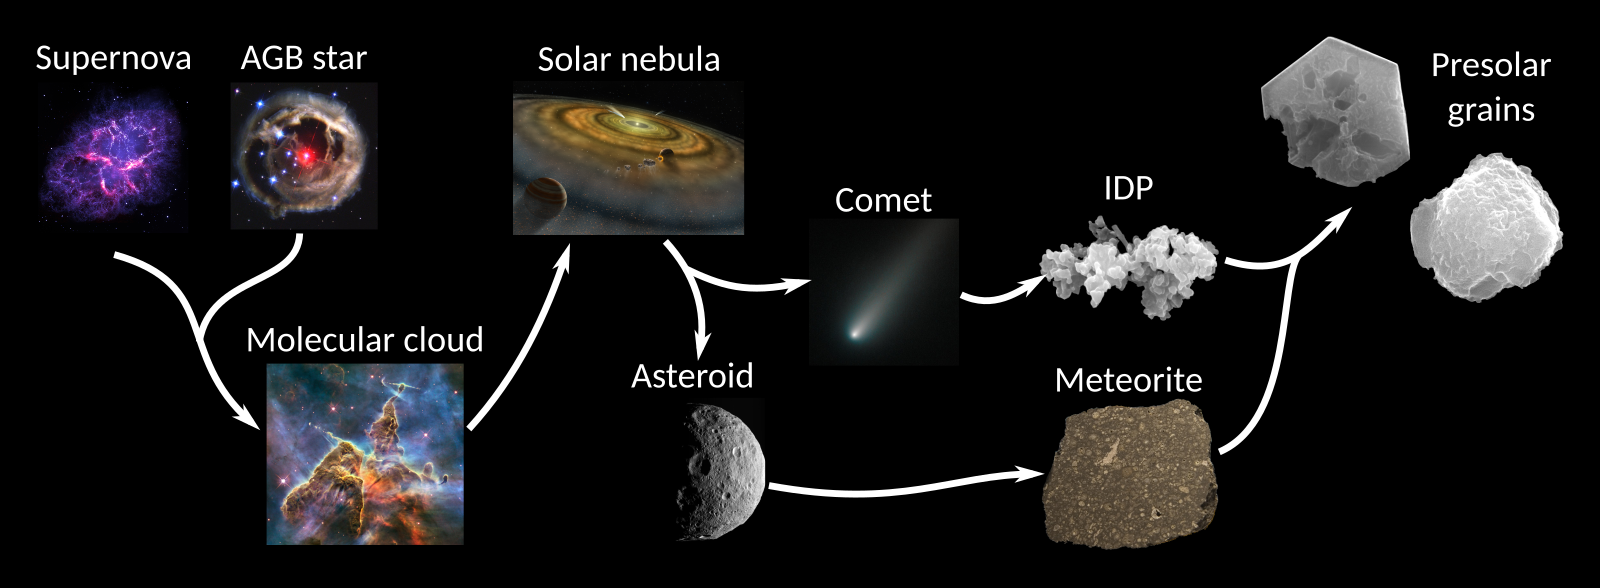 Origin of Stardust Grains